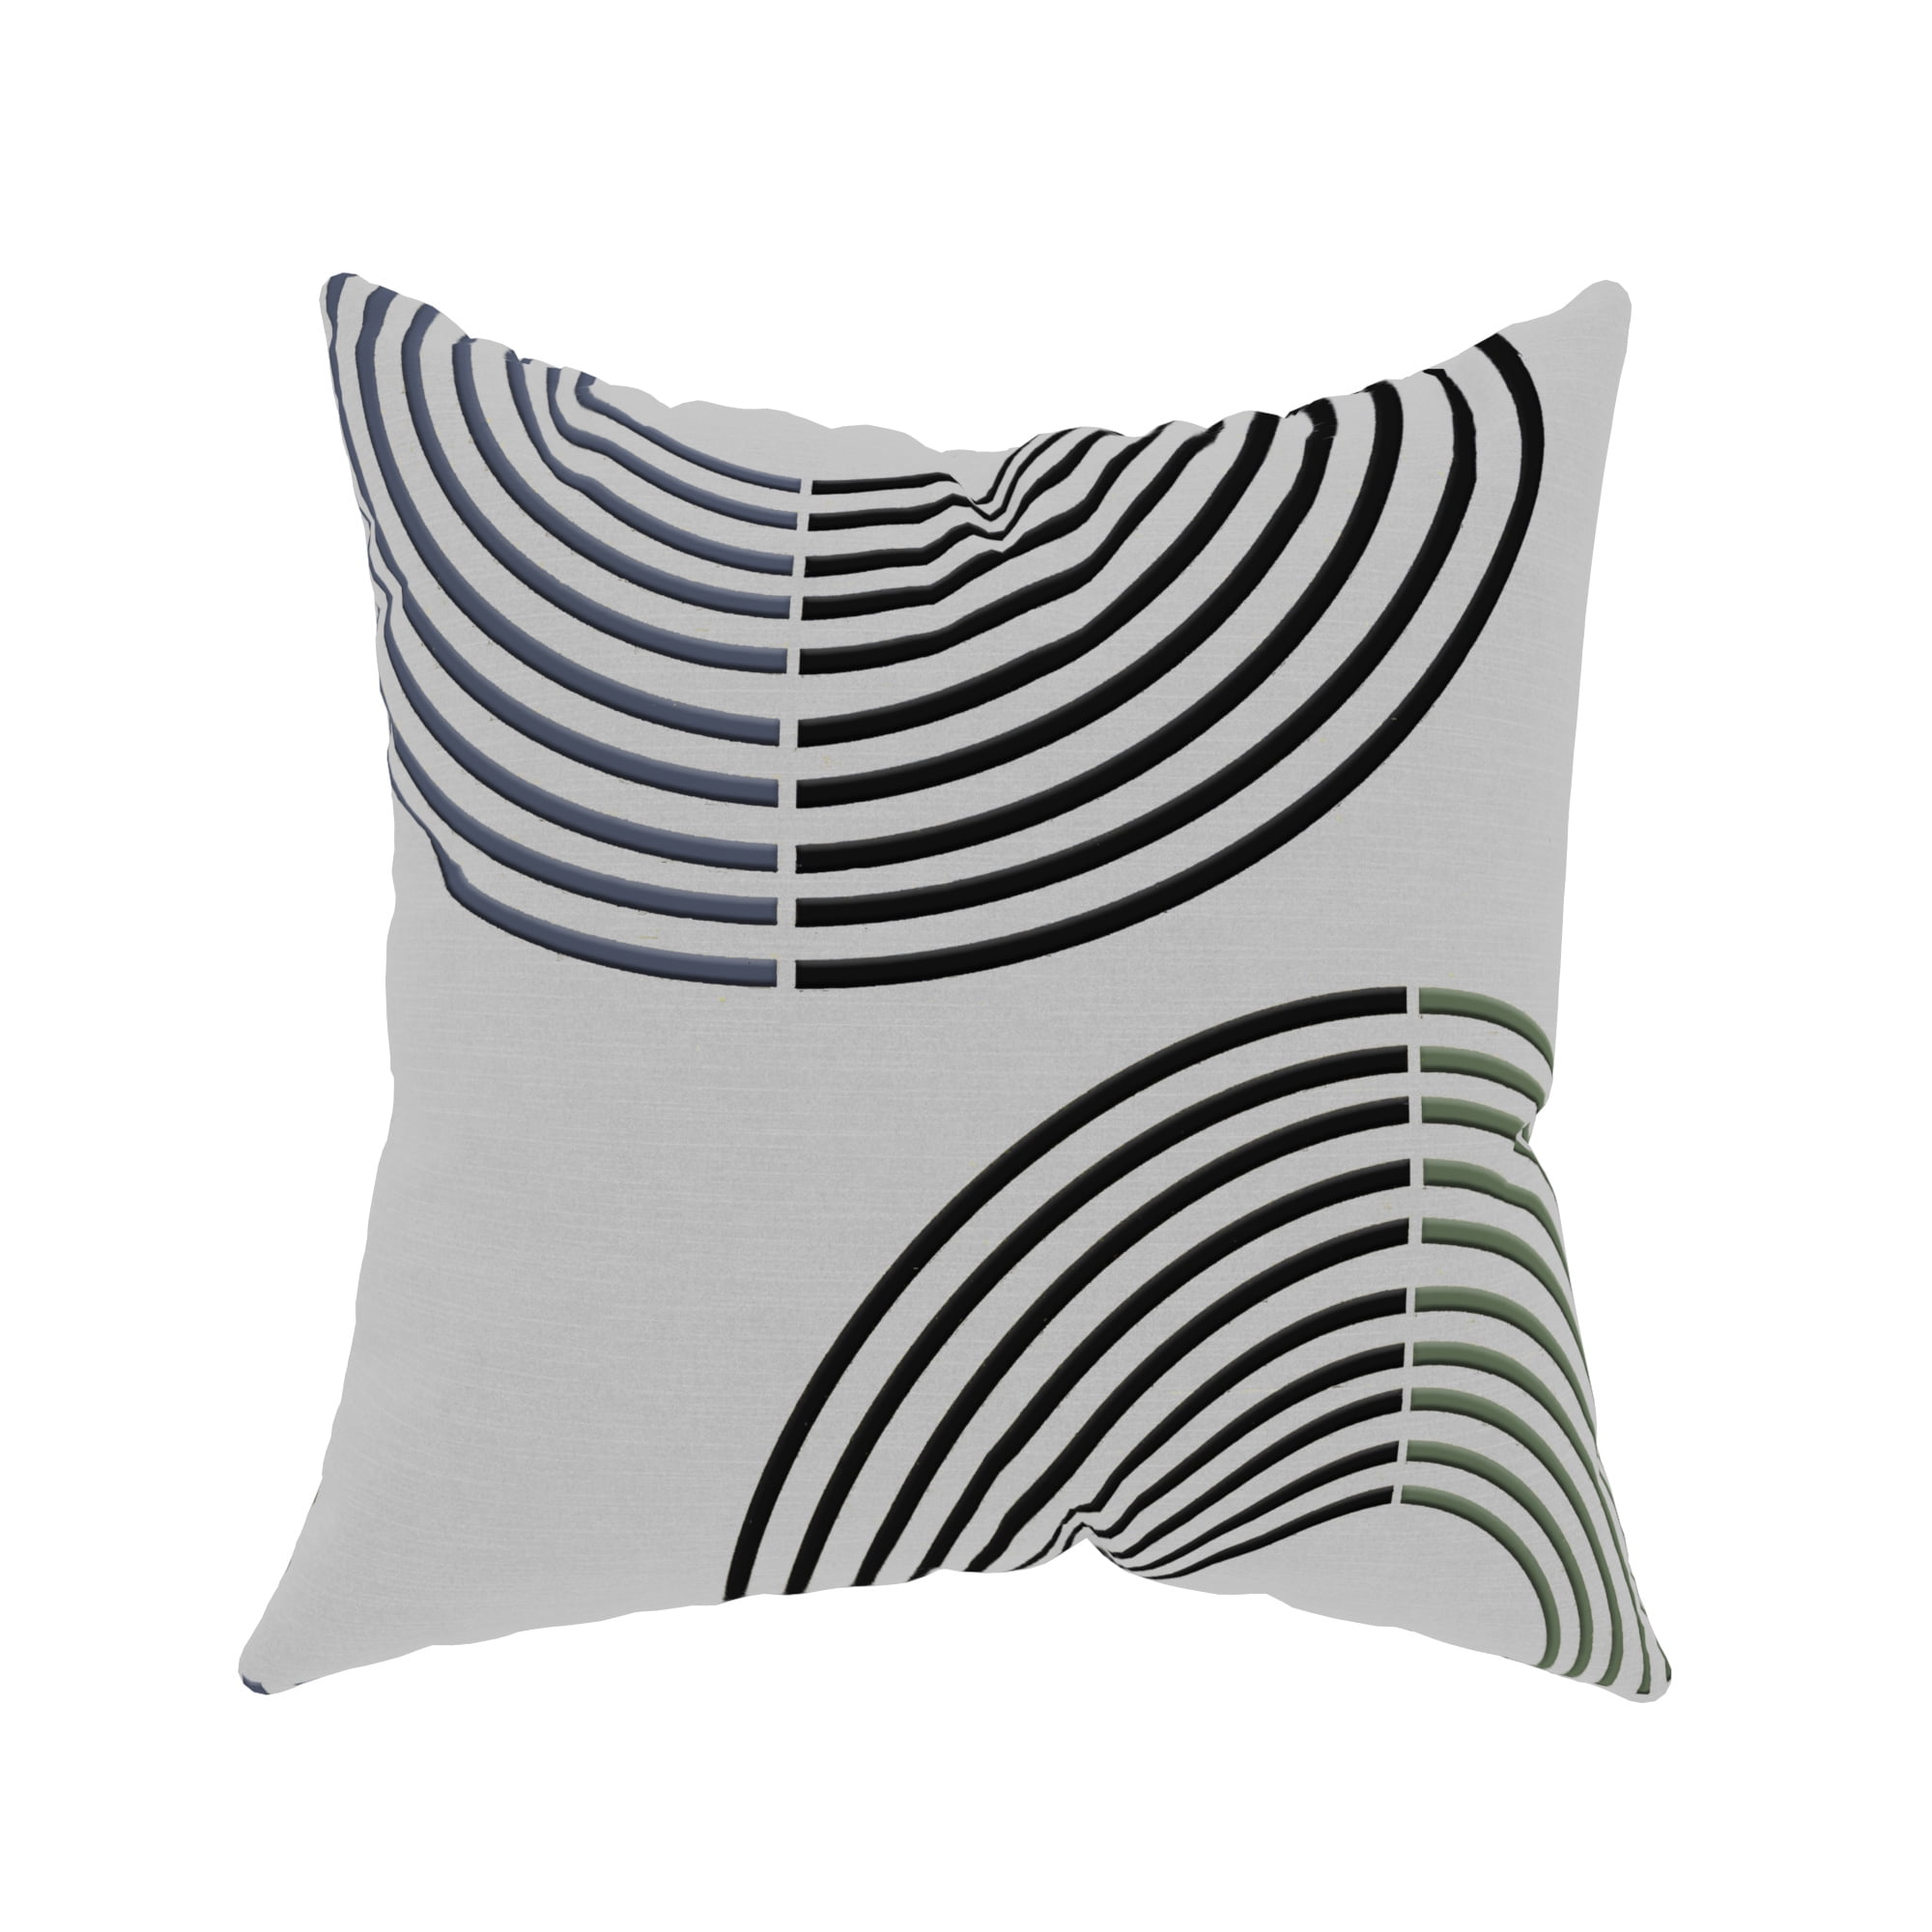 Art Simple Striped Cotton Cushion Cover Sofa Car Home Decor Pillow Case Fashion 